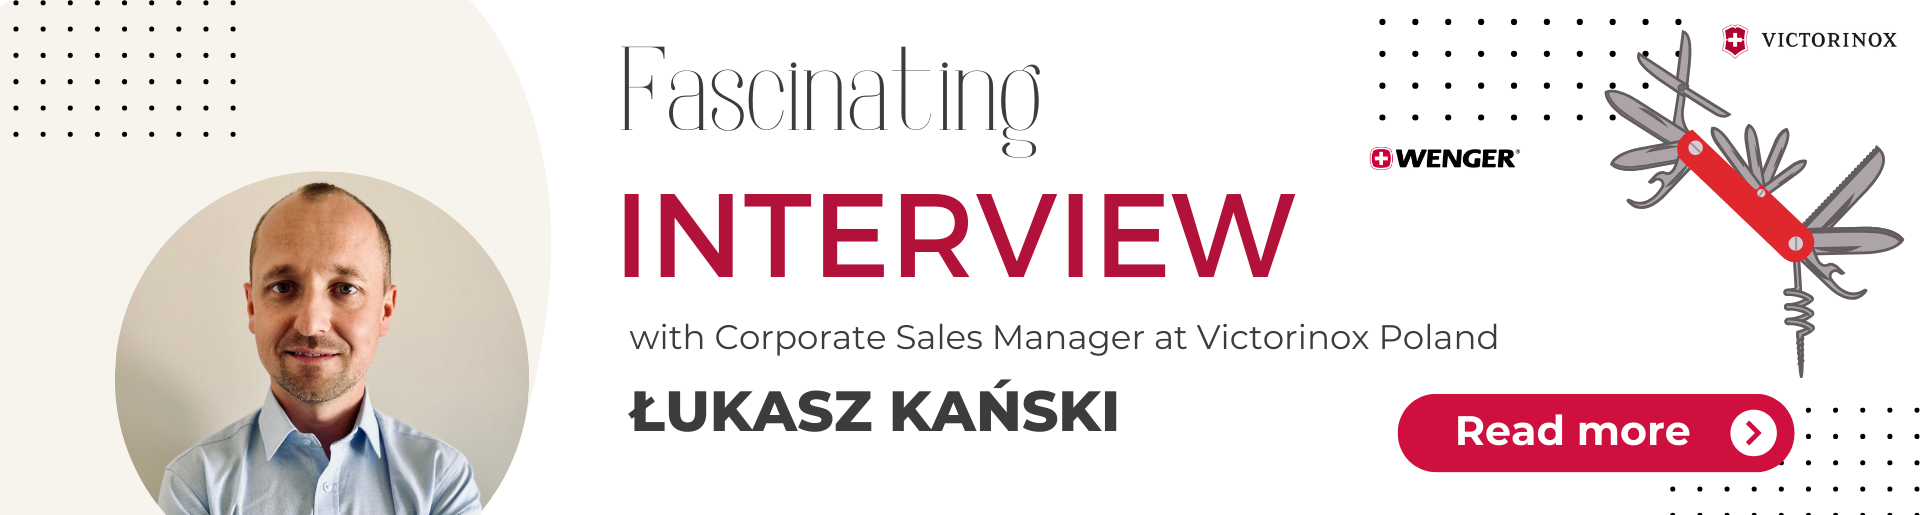 Interview with Łukasz Kański from Victorinox